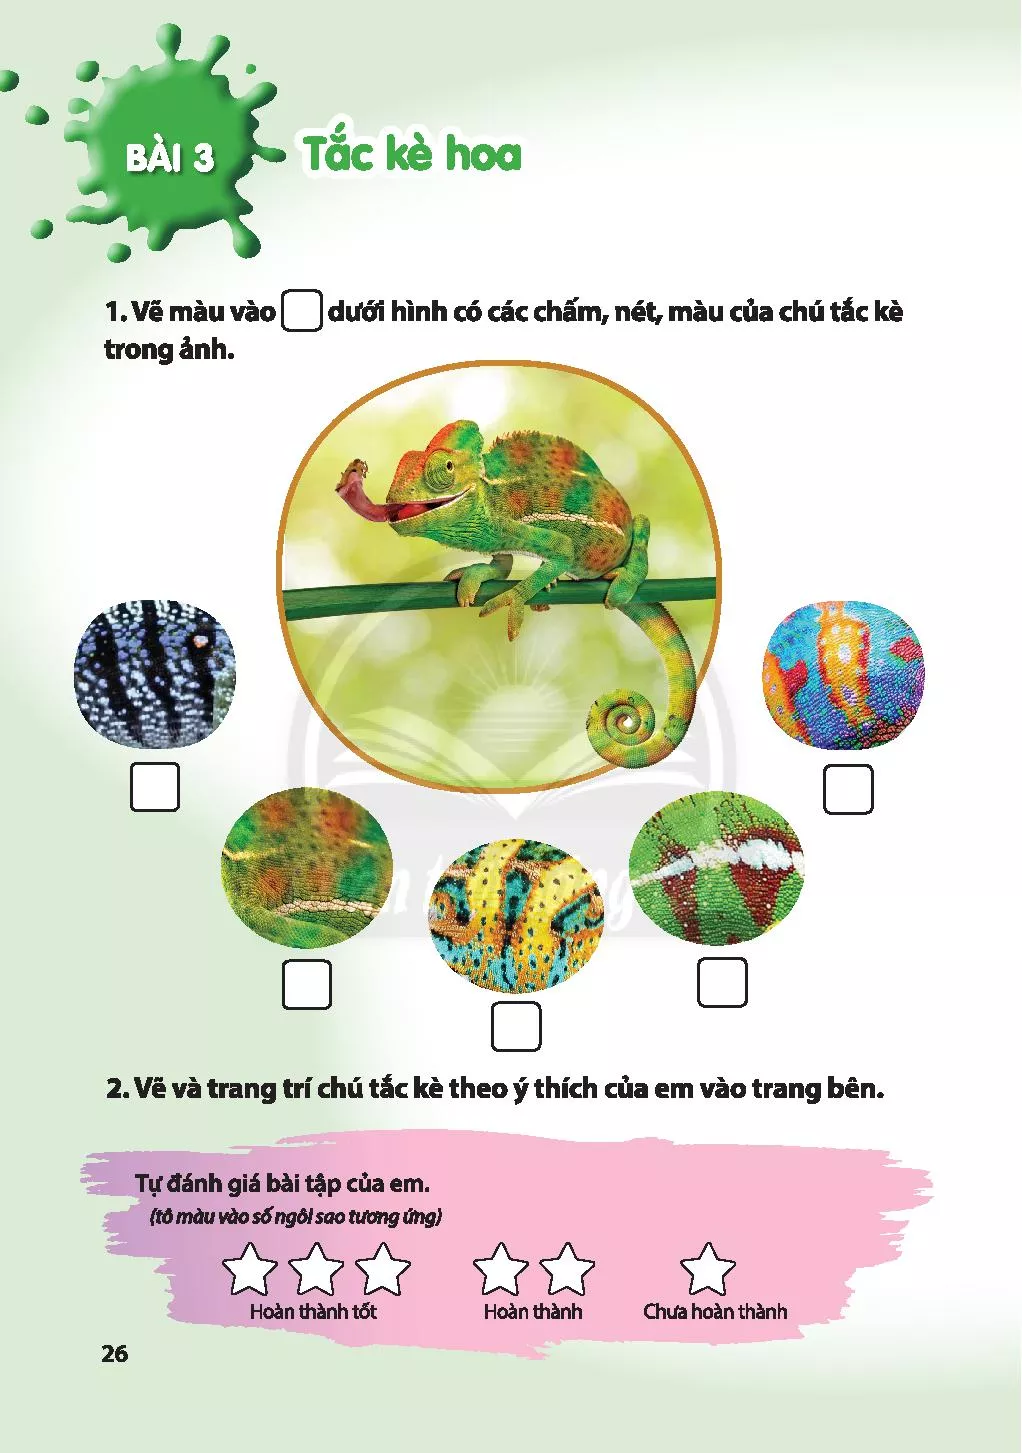 Vẽ tắc kè hoa lớp 2 là một hoạt động thú vị và bổ ích để giúp trẻ phát triển khả năng tư duy hình ảnh. Hãy xem hình ảnh liên quan để khám phá những tác phẩm đáng yêu của các em nhỏ.